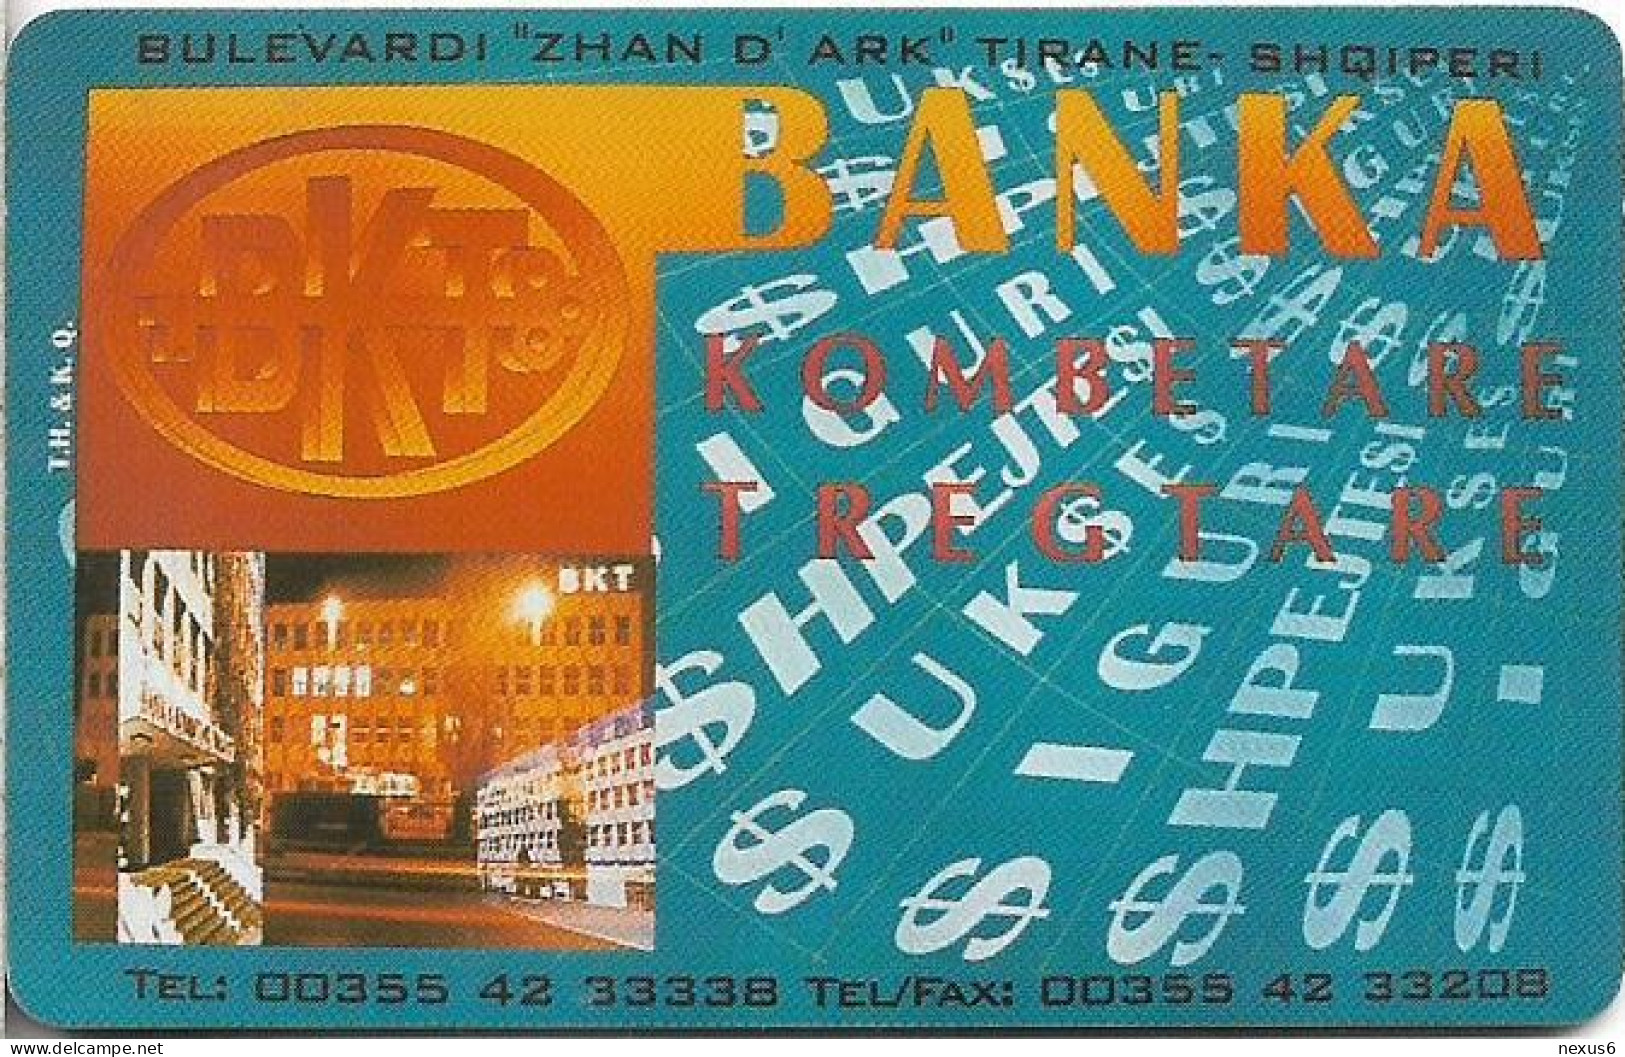 Albania - Albtelecom - BKT Bank - ALB-10, 12.1996, 200Units, 15.000ex, Used - Albanien